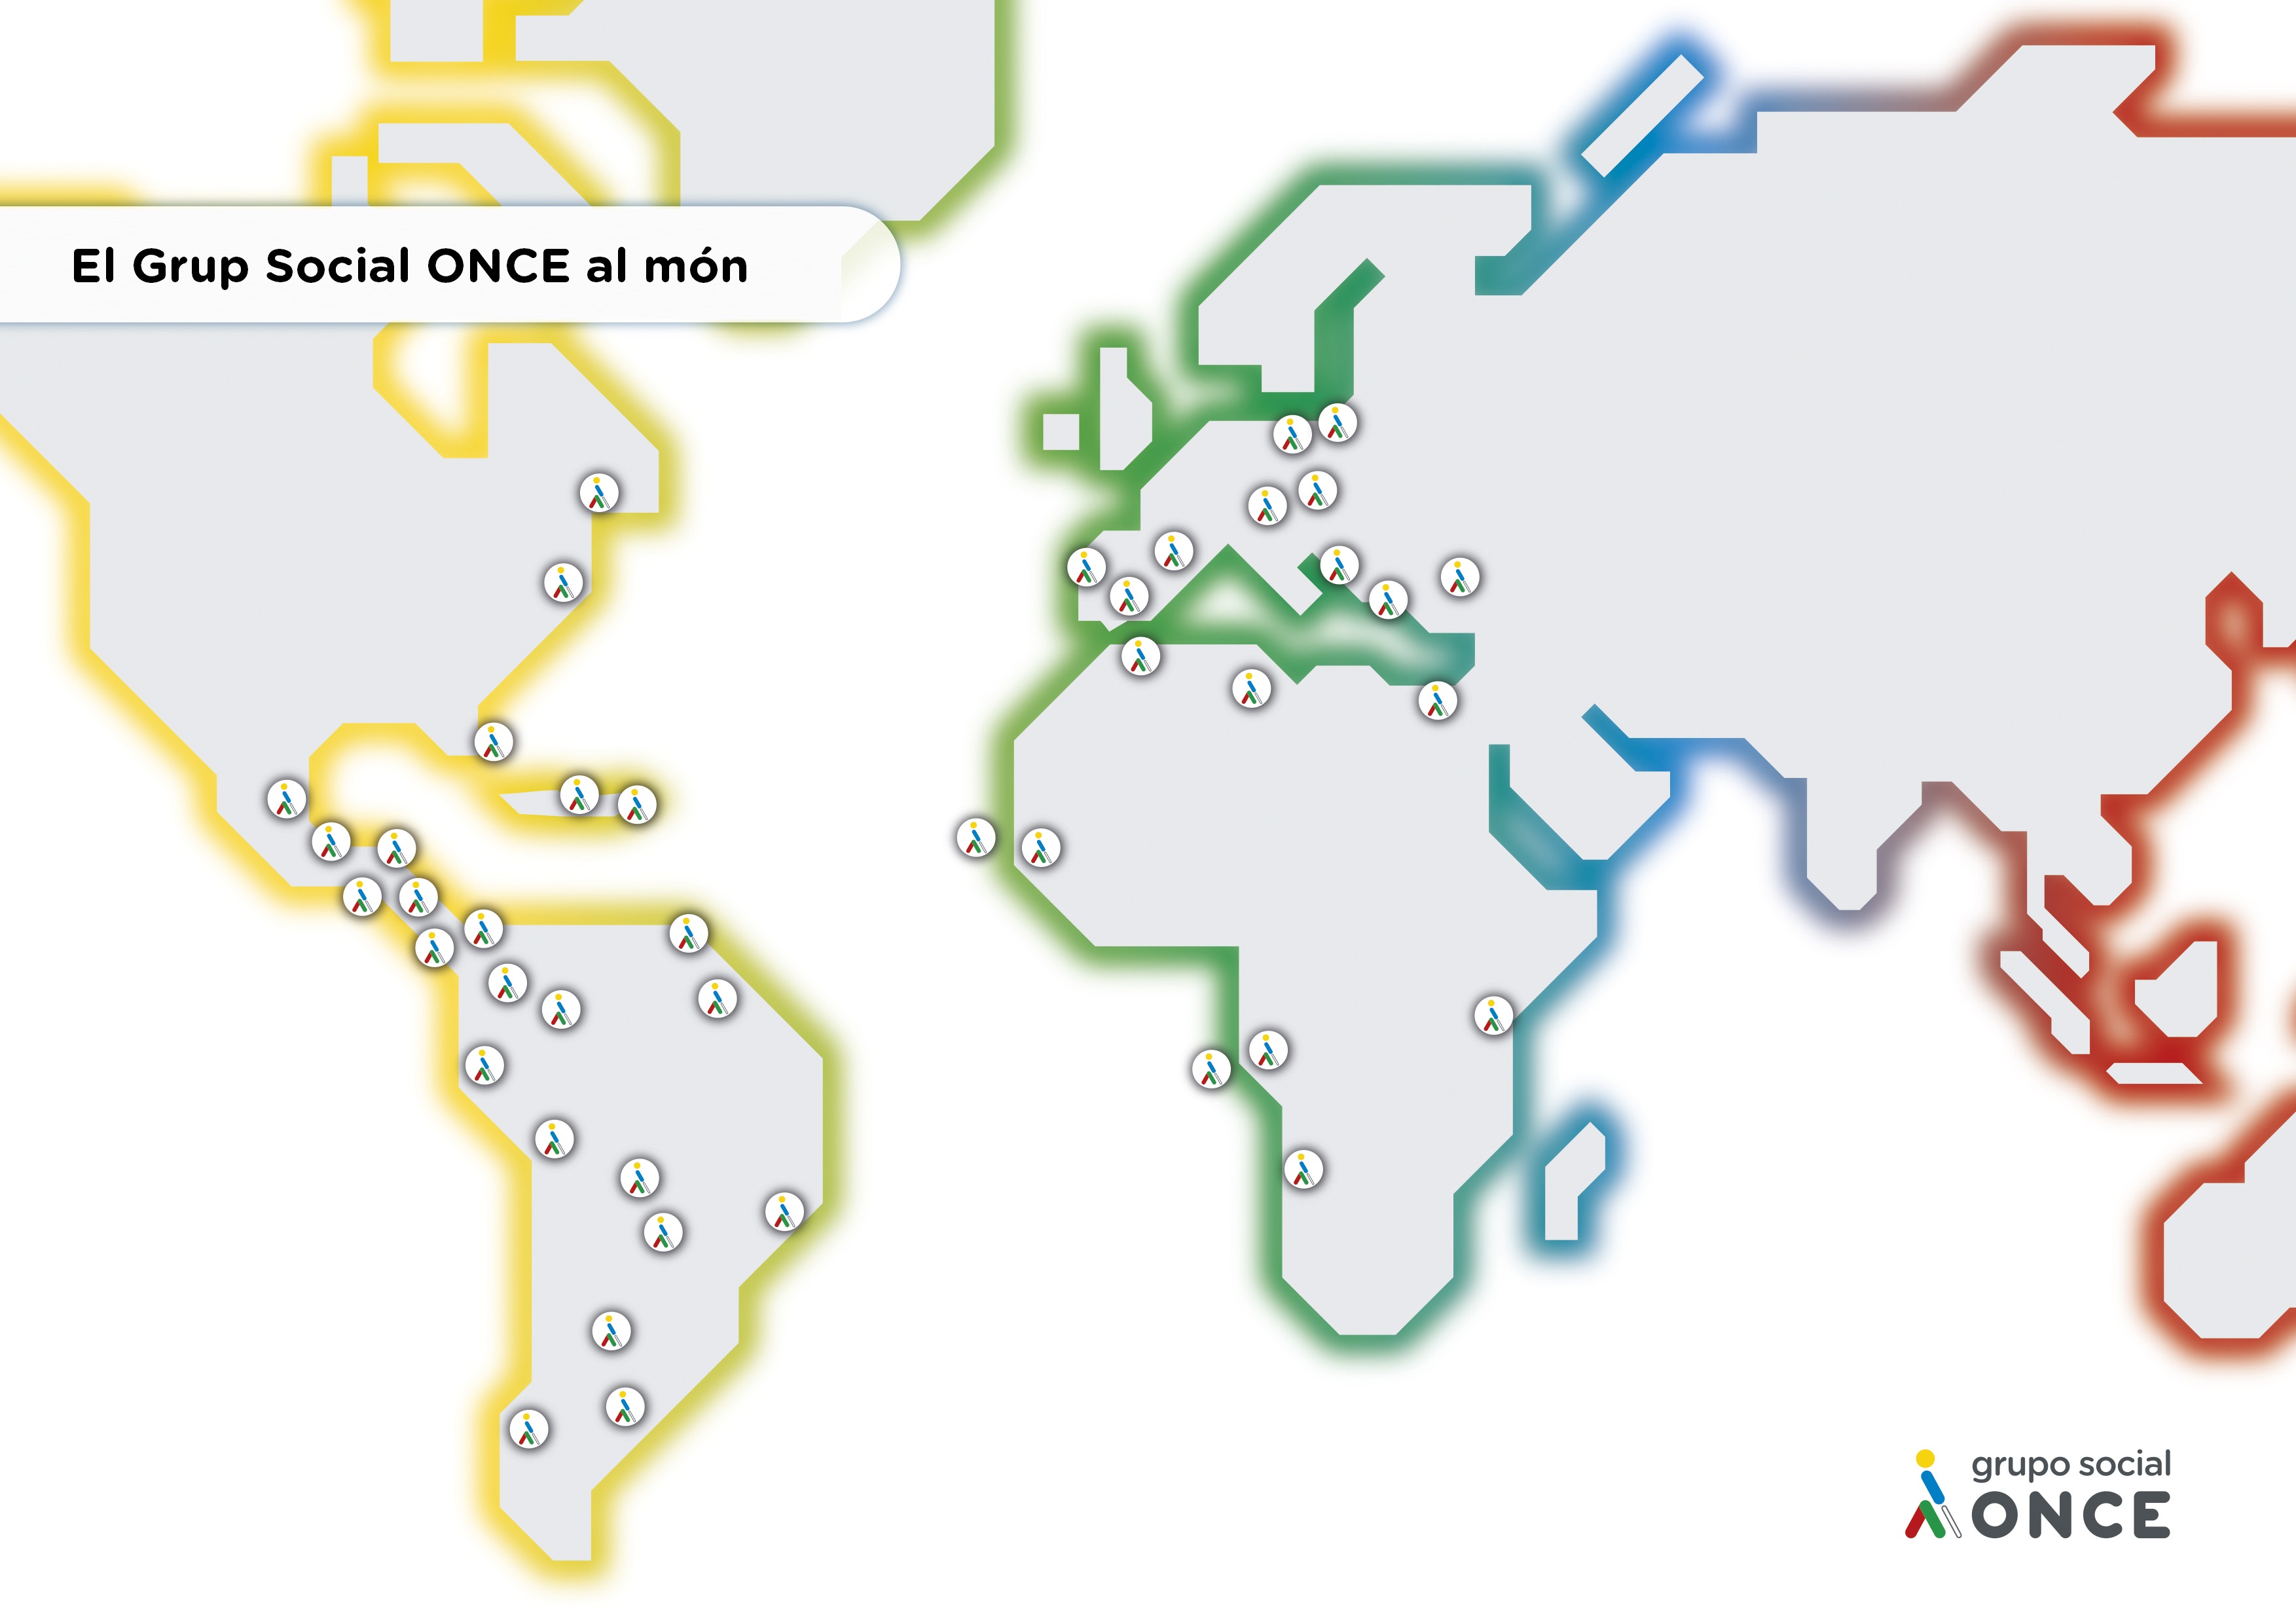 Un mapa del mundo con pequeños logos del Grupo Social ONCE donde este actúa, especialmente casi todos los países de Europa, África, América latina y América del norte.